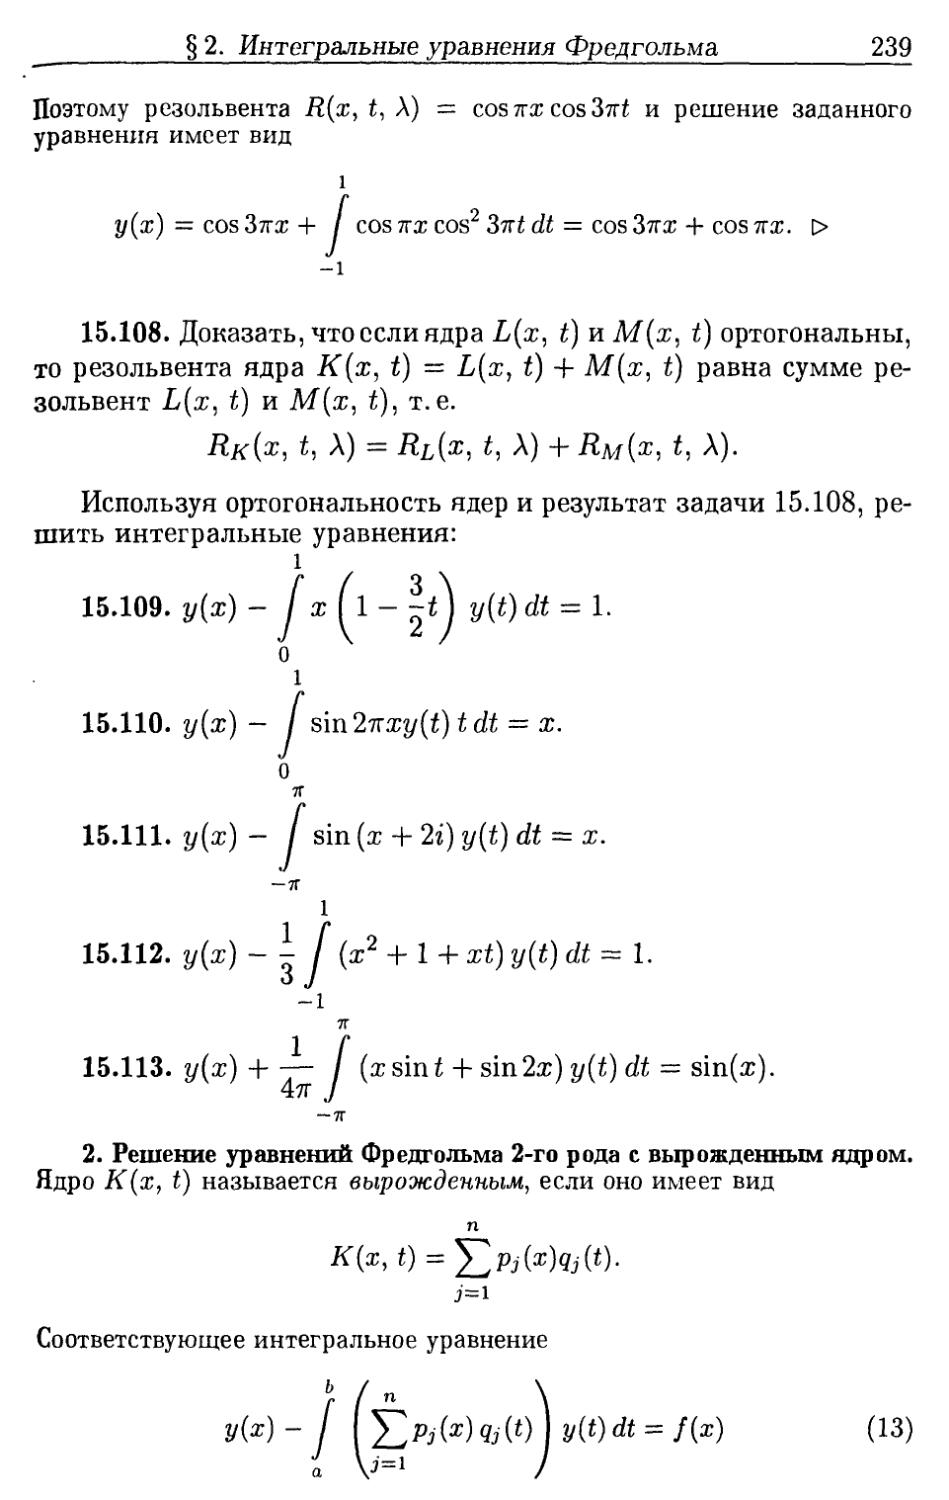 2. Решение уравнений Фредгольма 2-го рода с вырожденным ядром